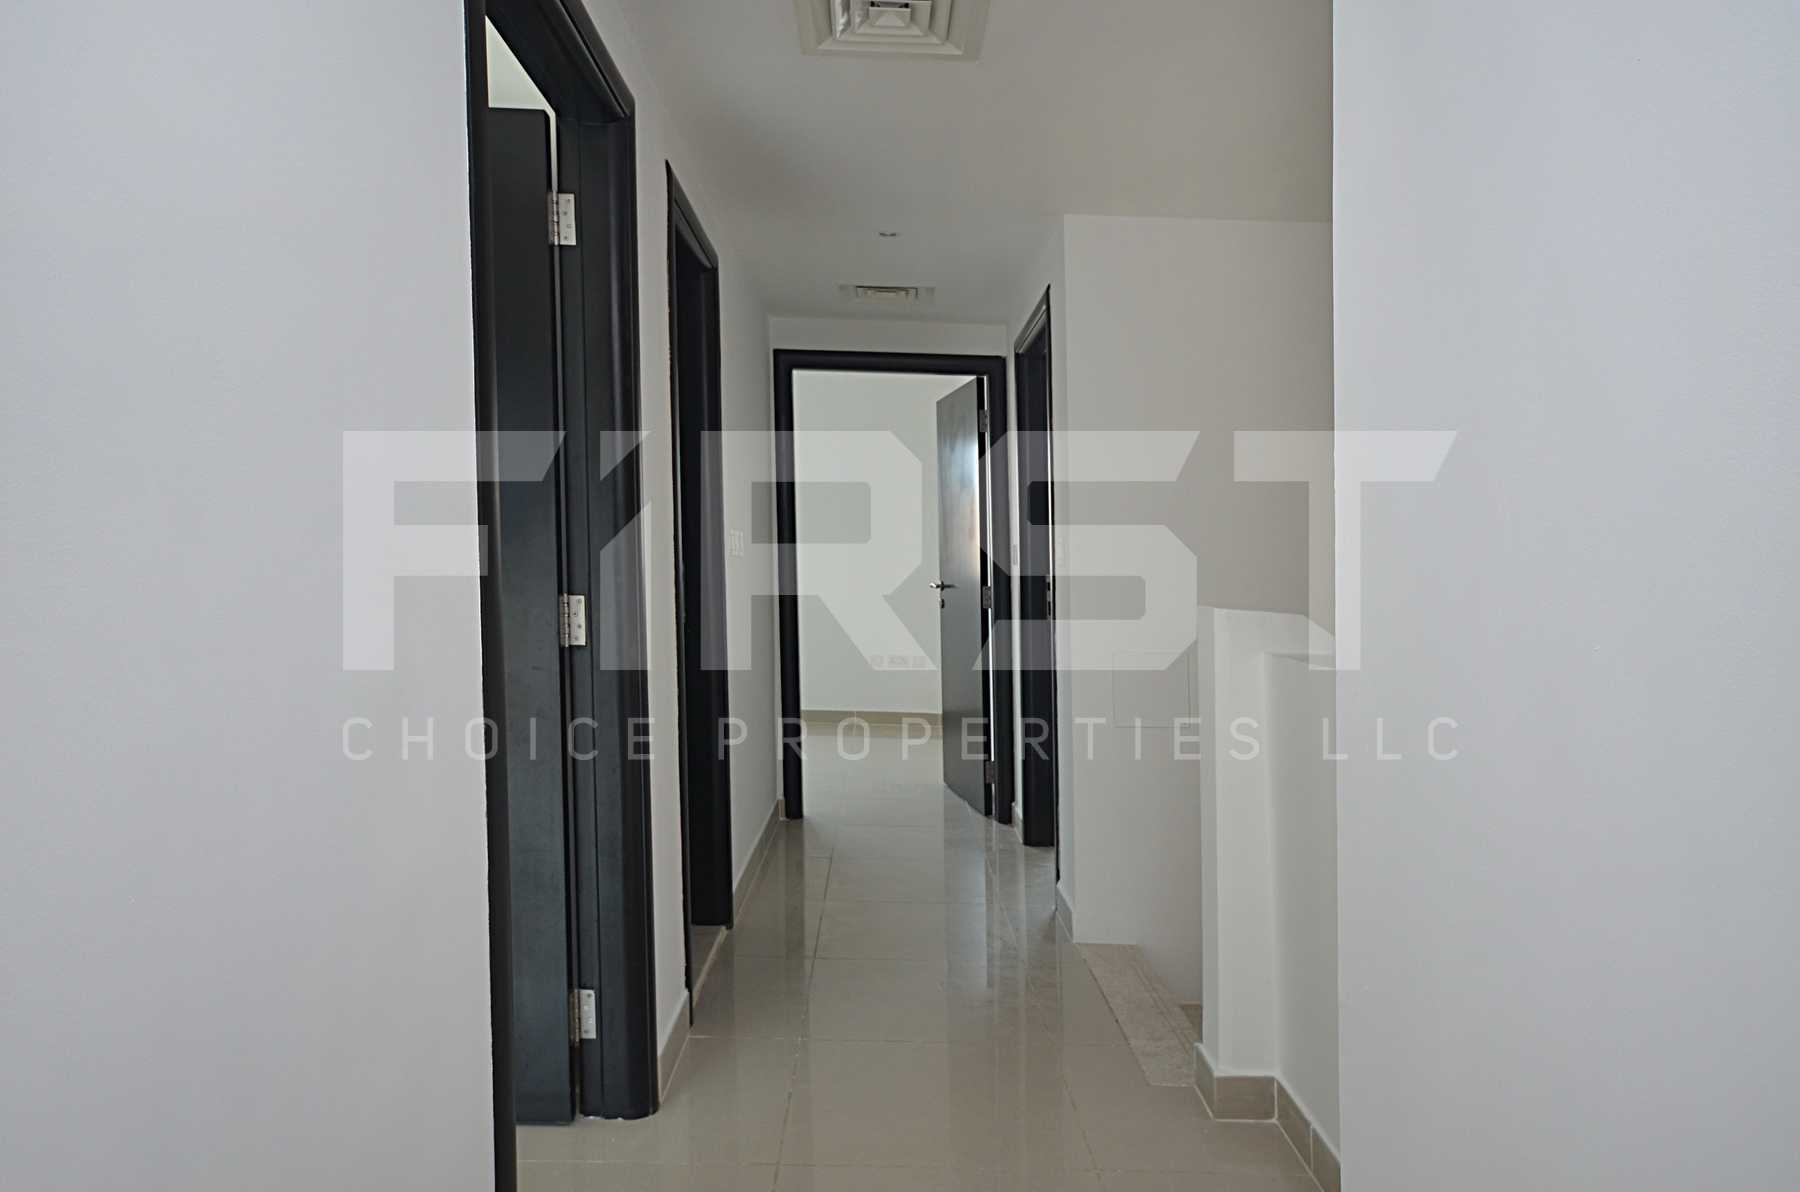 Internal Photo of 4 Bedroom Villa in Al Reef Villas Al Reef Abu Dhabi UAE 265.5 sq.m 2858 sq.ft (29).jpg